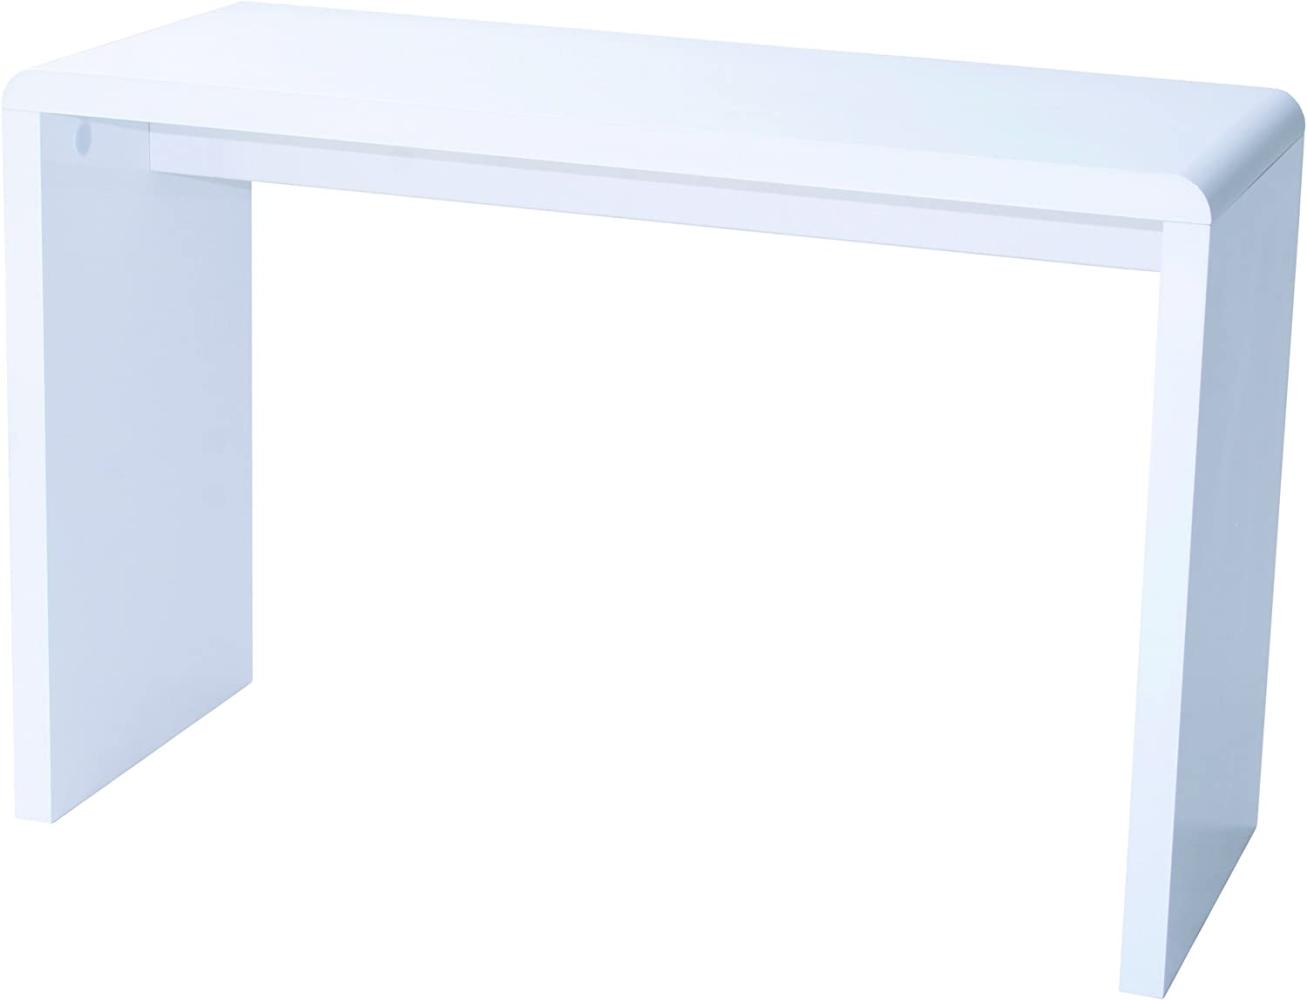 Prana - moderner Schreibtisch, Schminktisch, Bastelltisch, abgerundete Kanten, weiss hochglanz Bild 1